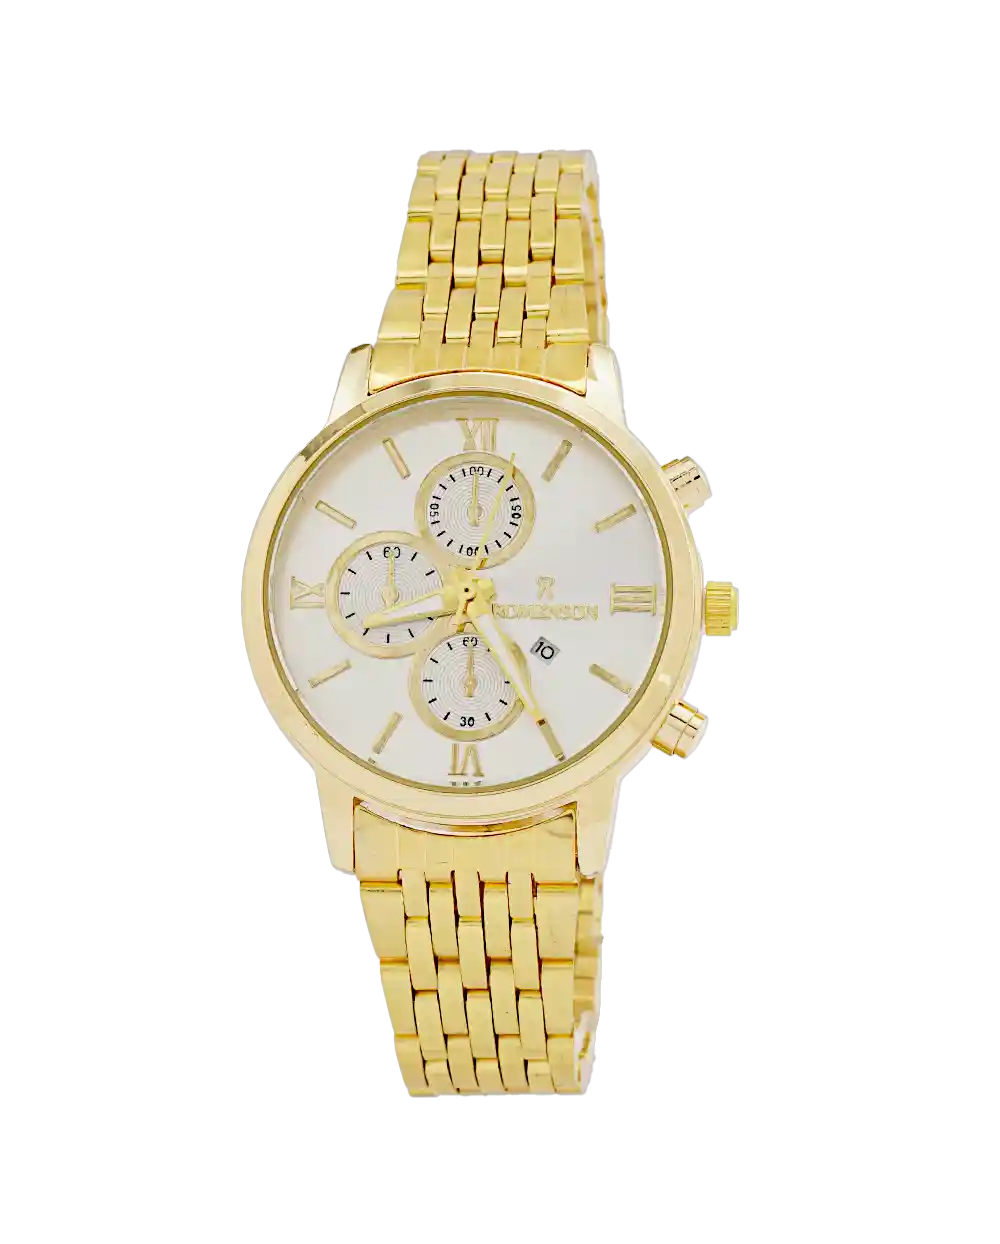 خرید ساعت مچی زنانه رومانسون ROMANSON مدل 1980 بند استیل طلایی رنگ ثابت و صفحه سفید بهترین قیمت به همراه ارسال رایگان و جعبه